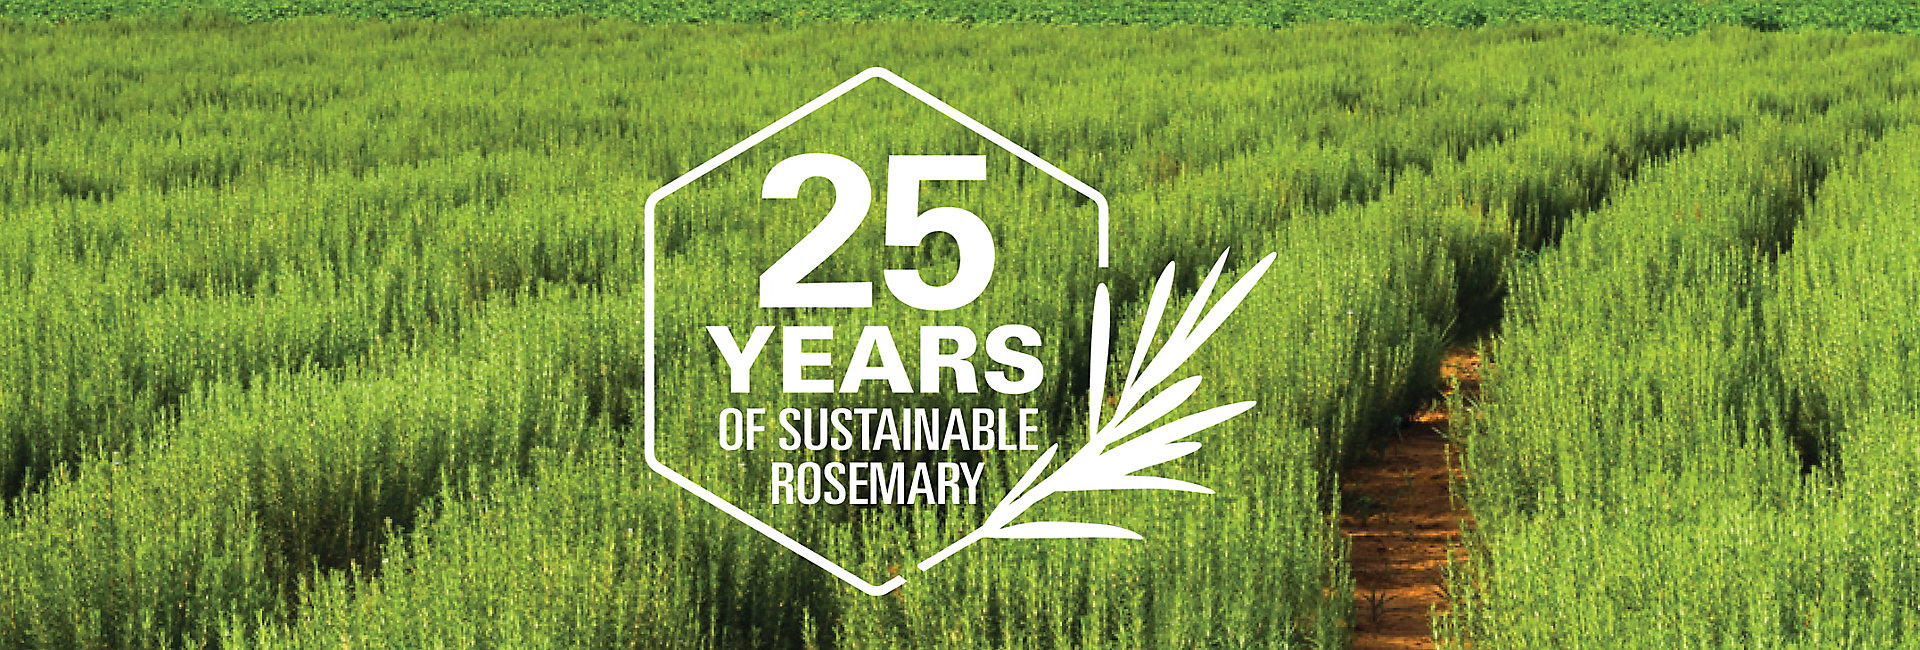 Rosemary 25th Anniversary-1